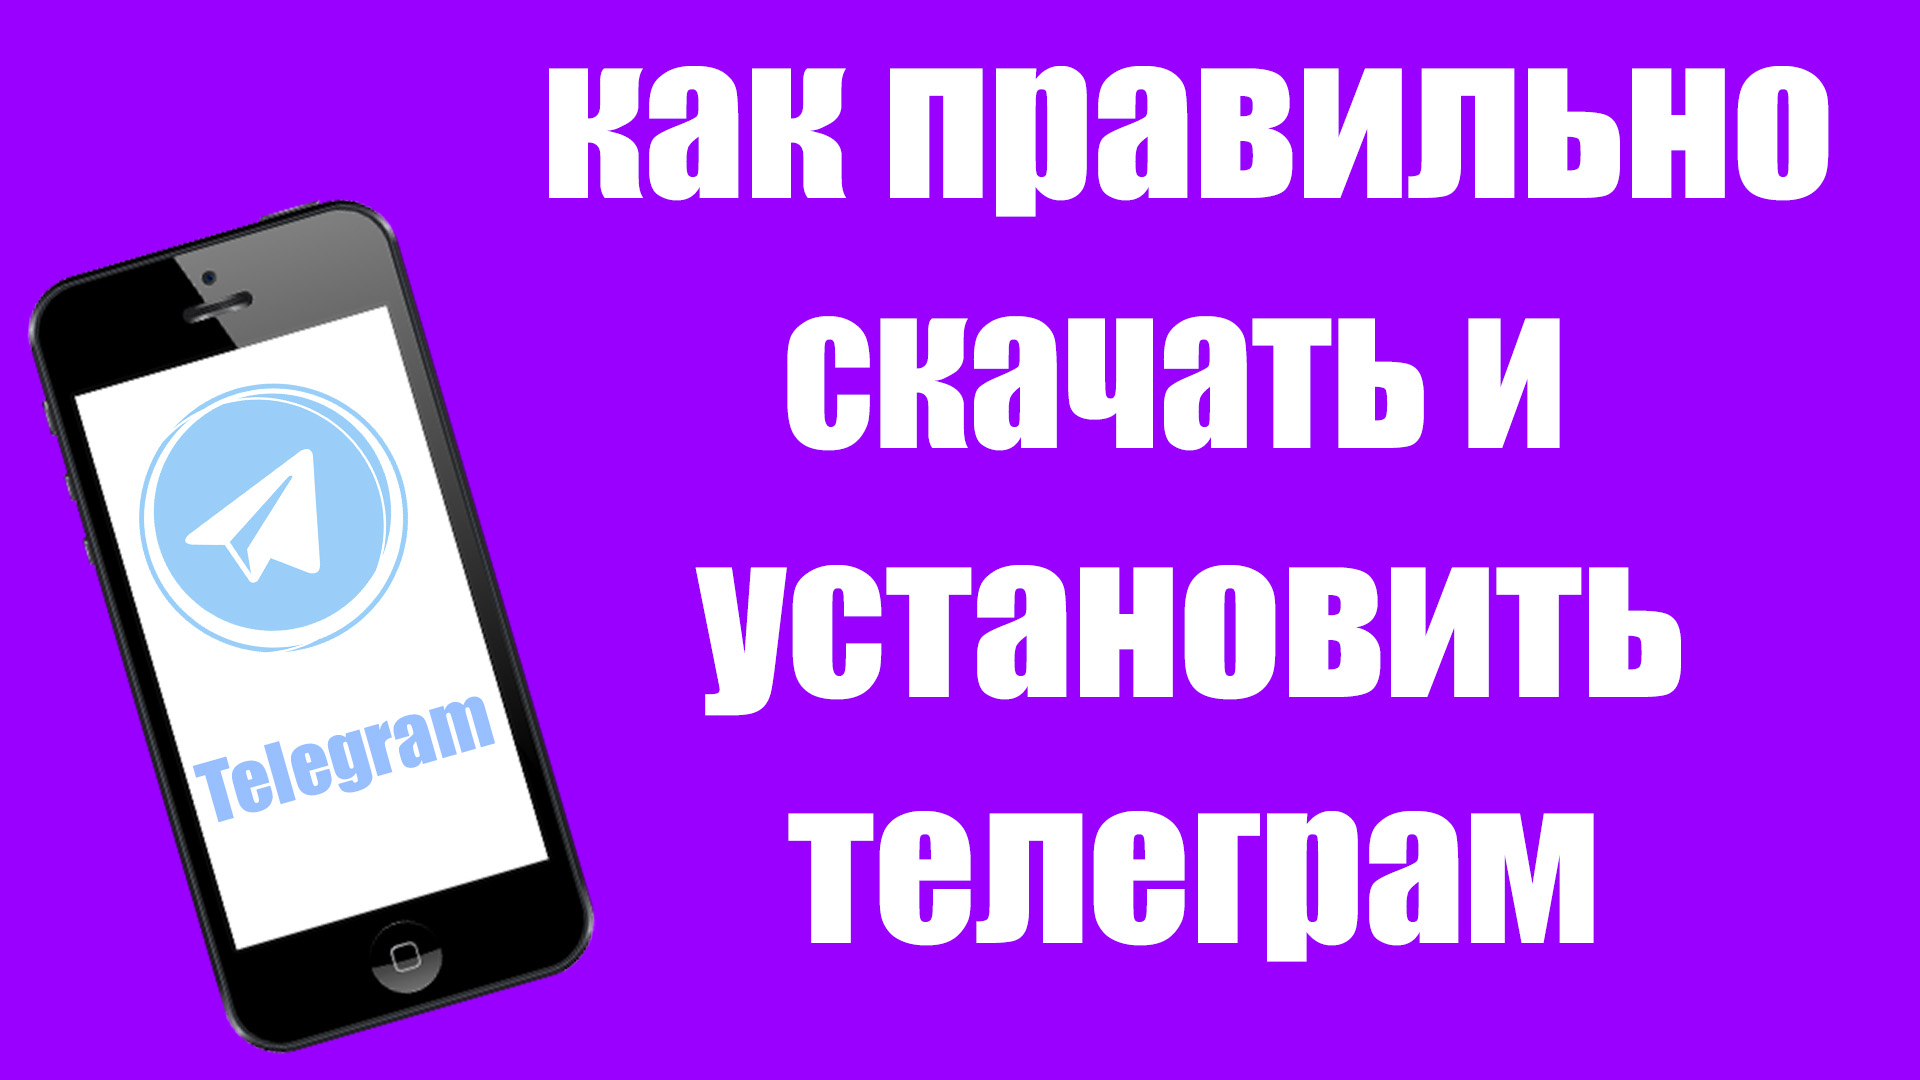 Скачать телеграмм на русском языке для смартфона фото 118